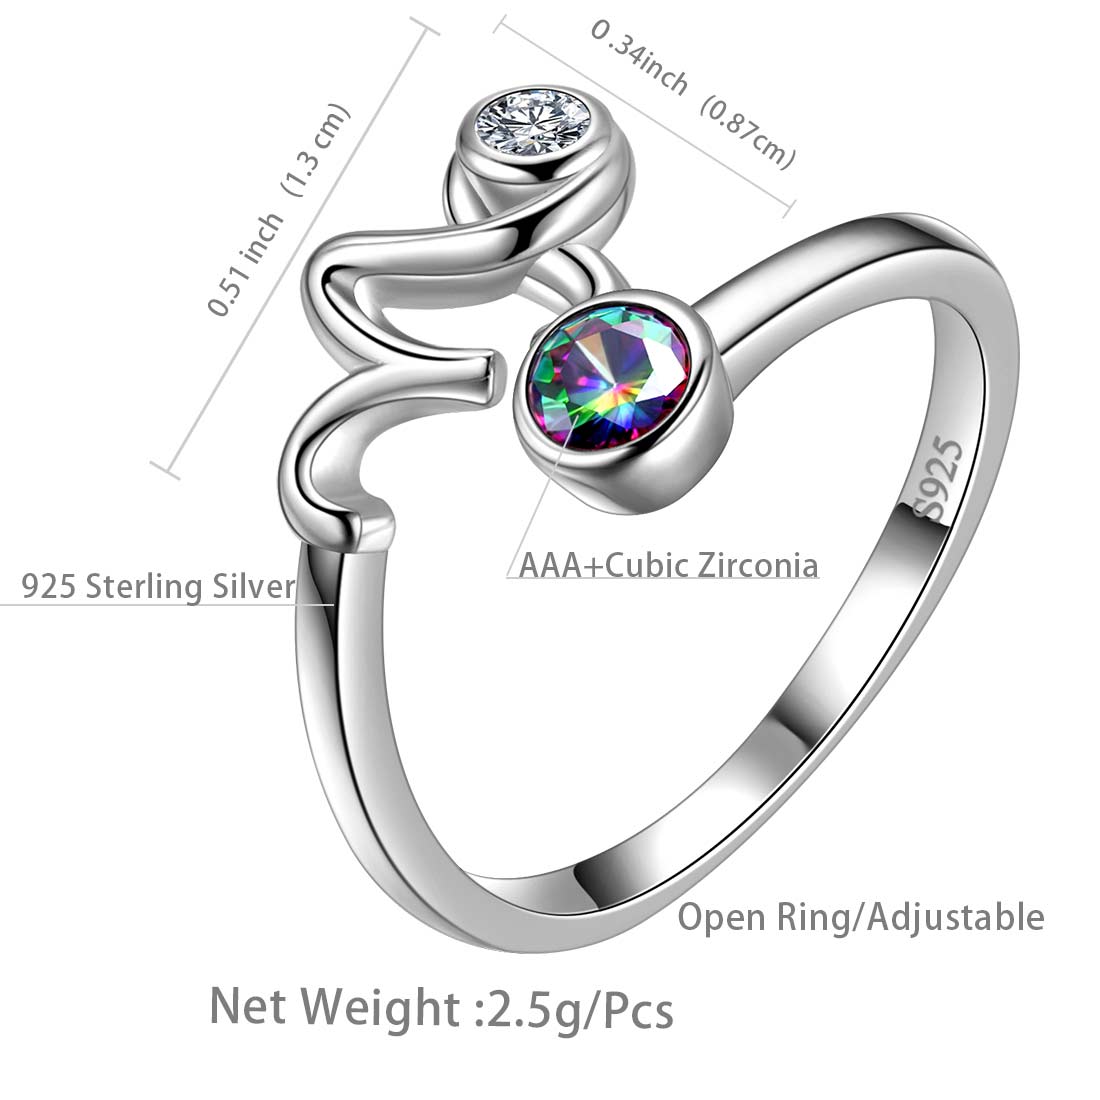 Capricorn Zodiac Open Rings 925 Sterling Silver - Rings - Aurora Tears Jewelry